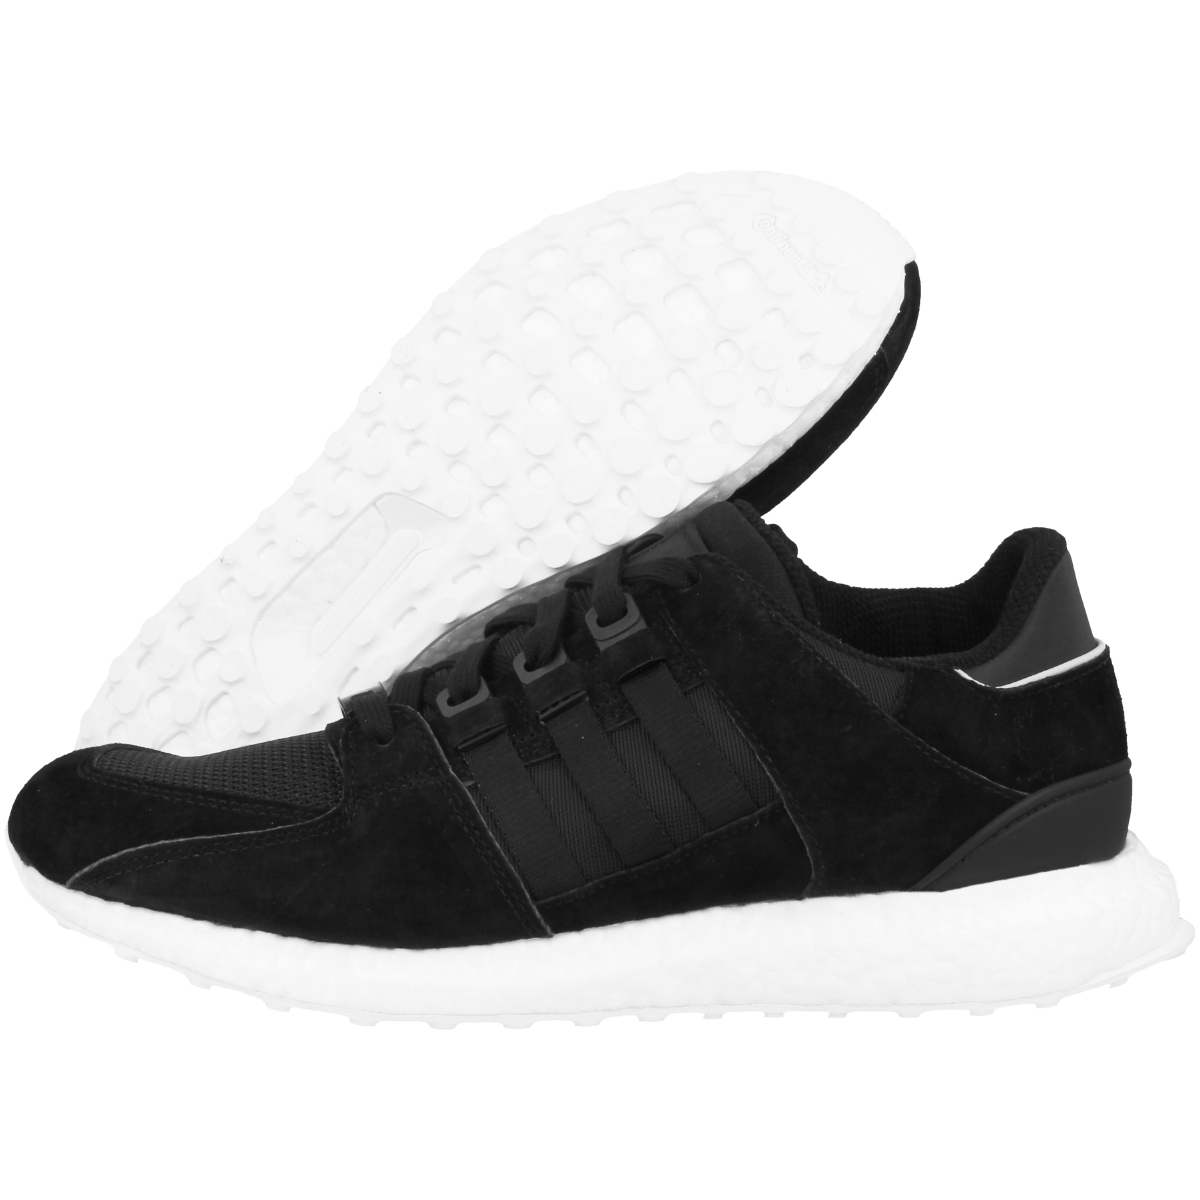 Adidas Equipment Support 93/16 Sneaker low schwarz